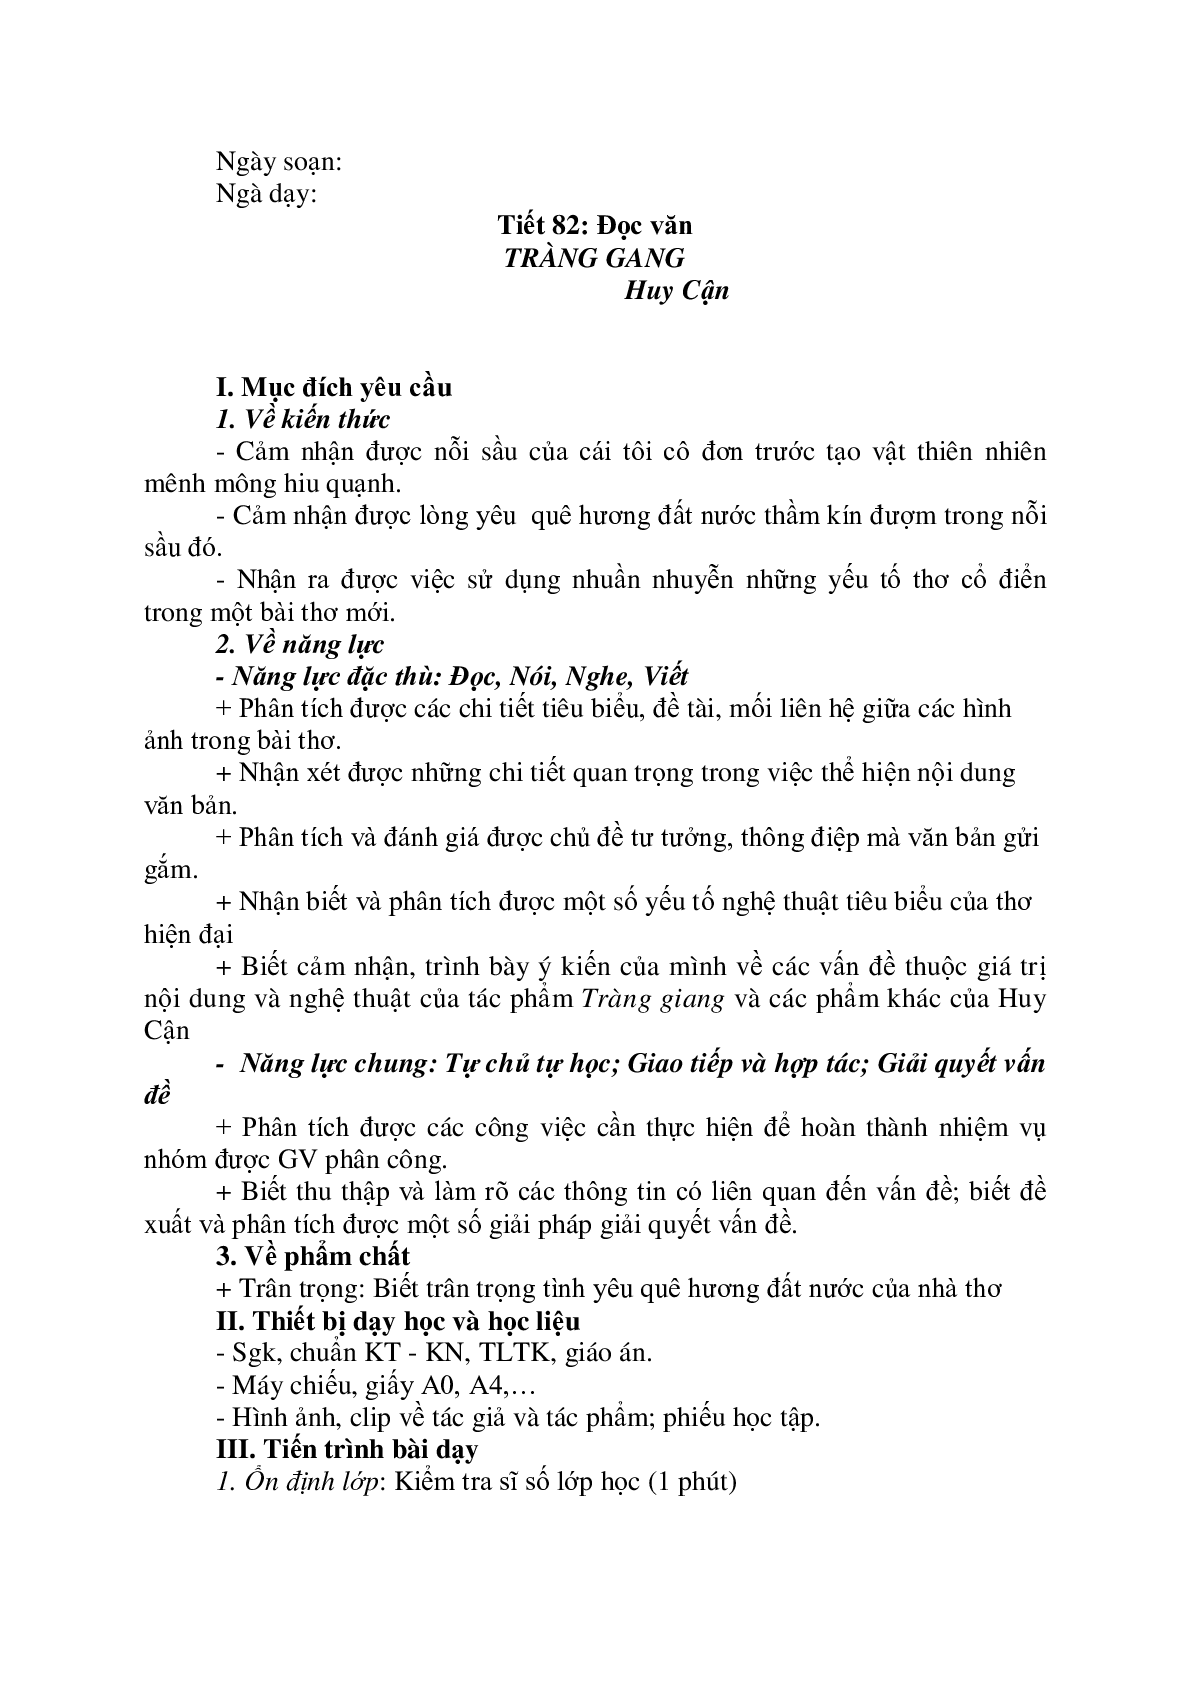 Giáo án Ngữ Văn 11: Tiết 82 Tràng giang tiết 1 mới nhất (trang 1)